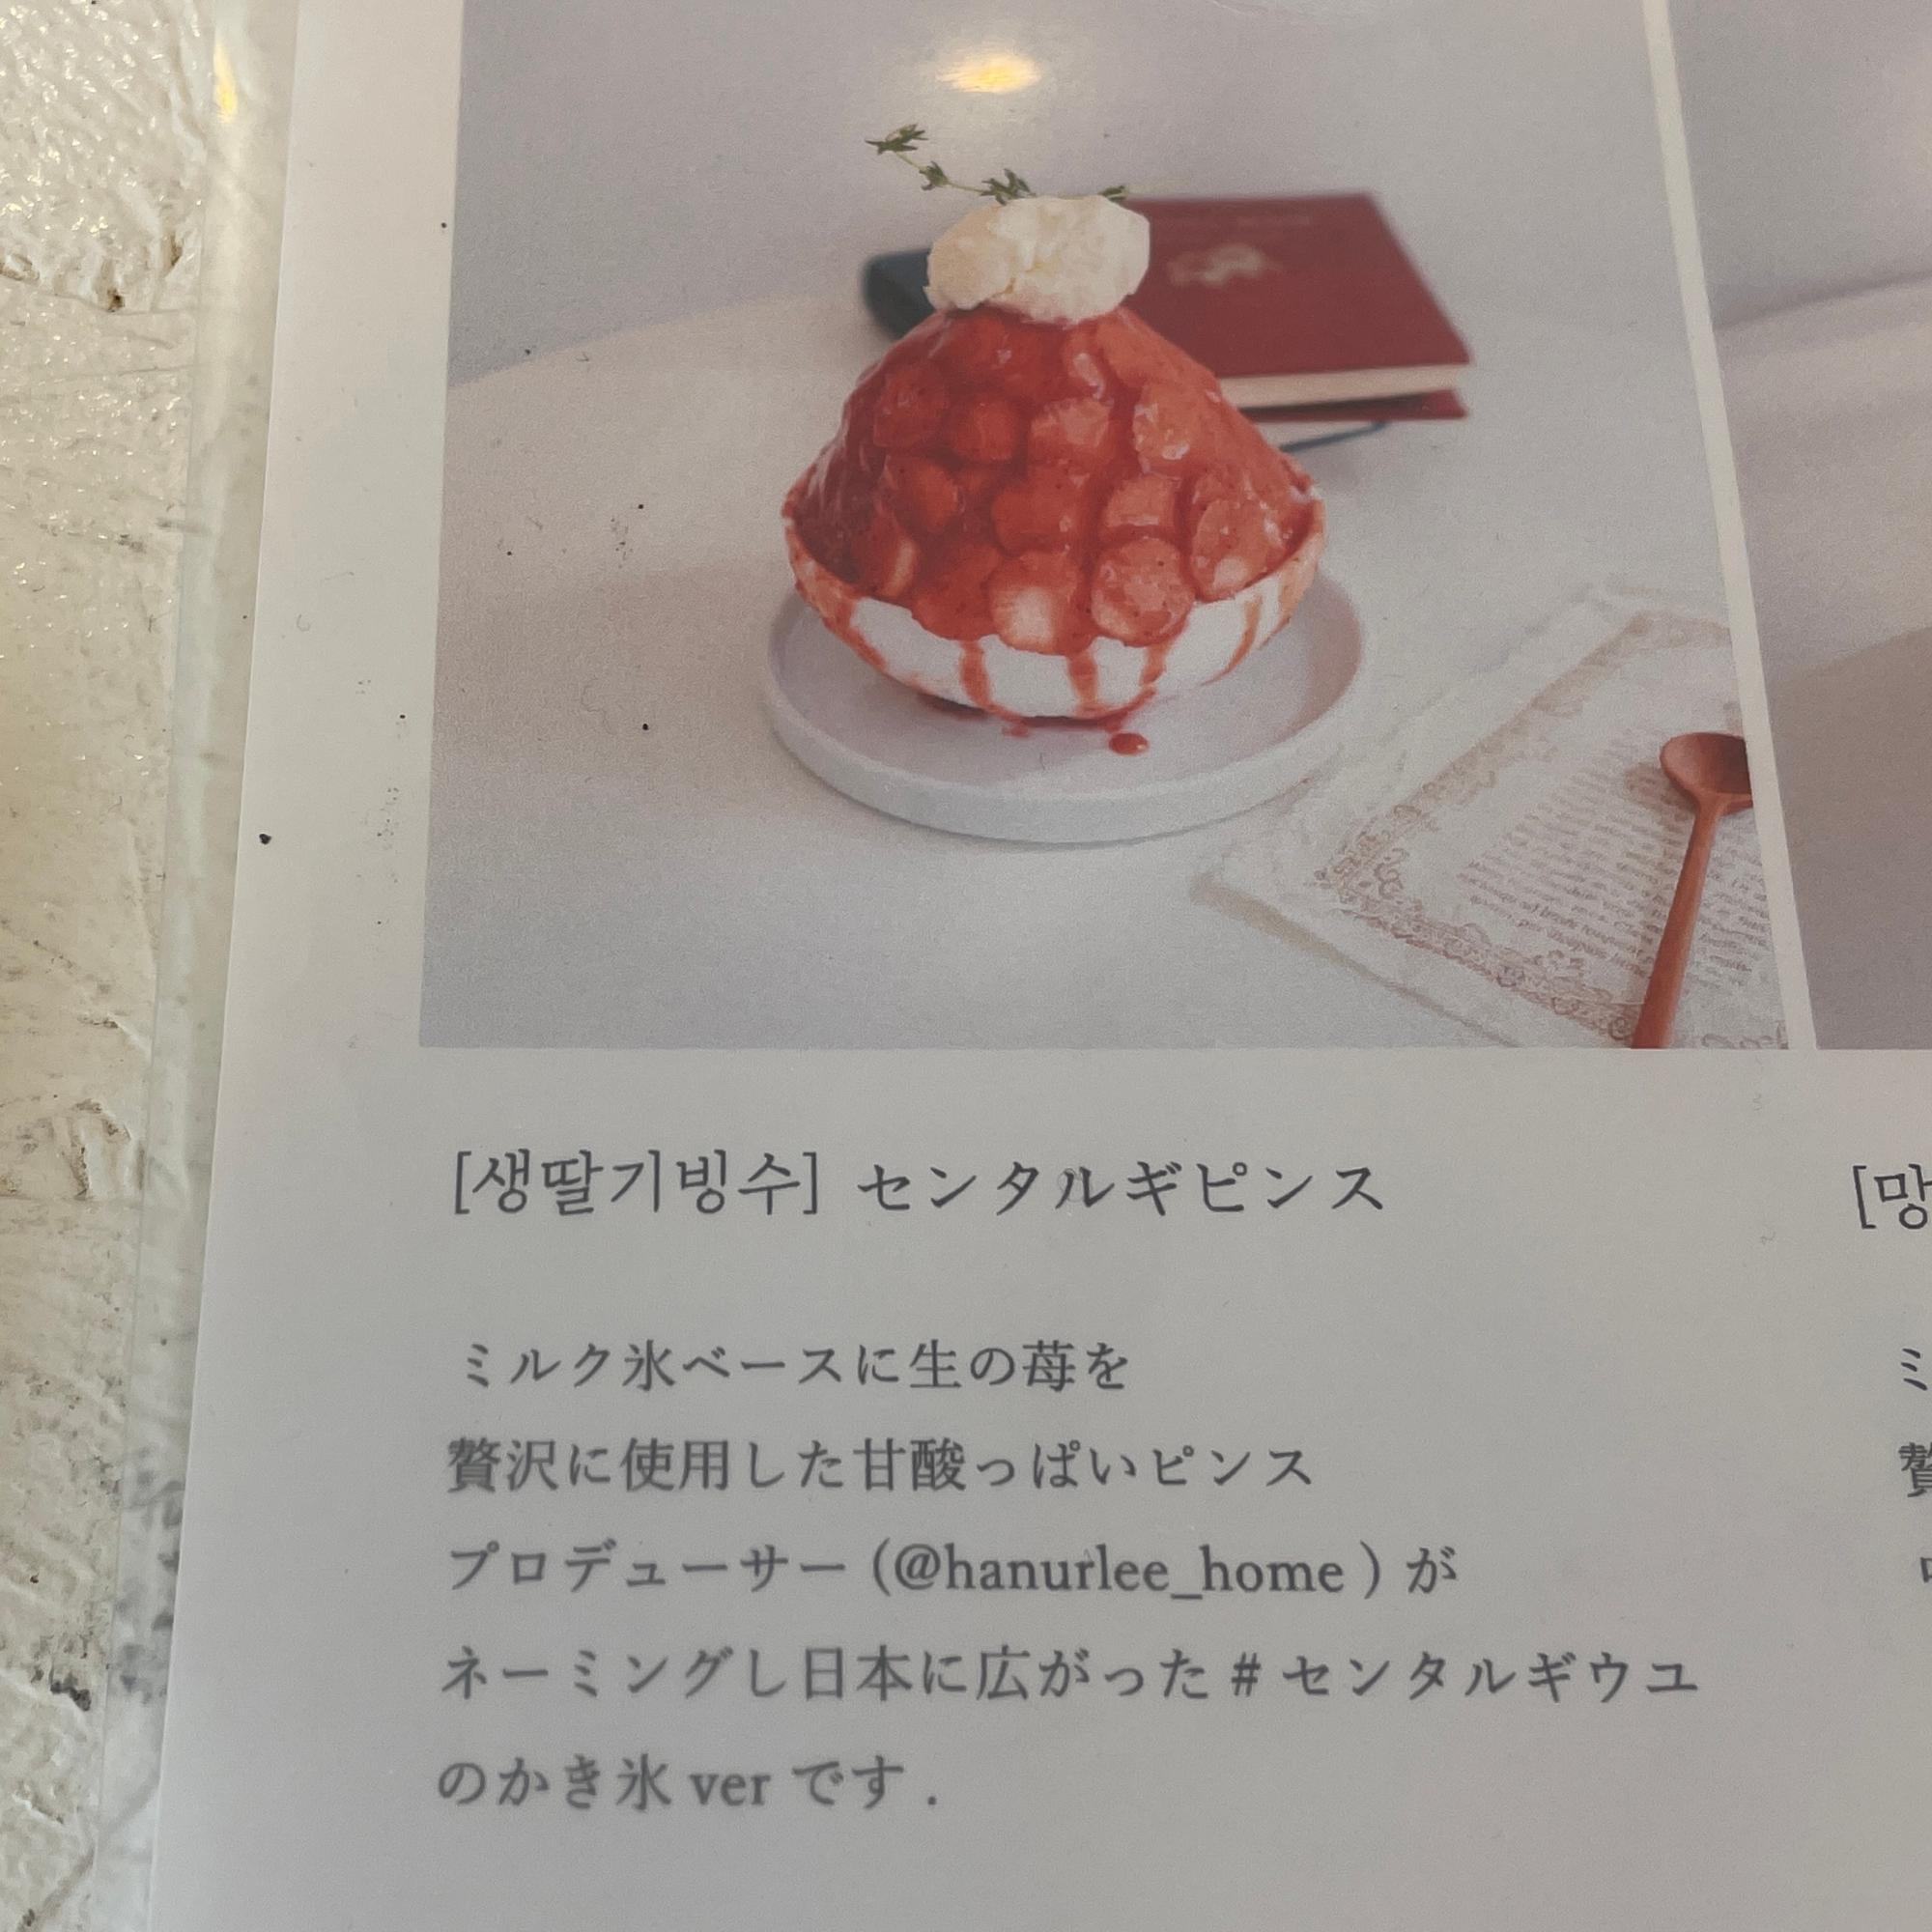 専門店レベルの美味しさに感動 韓国マカロンショップが提供するかき氷 きょん Yahoo Japan クリエイターズプログラム